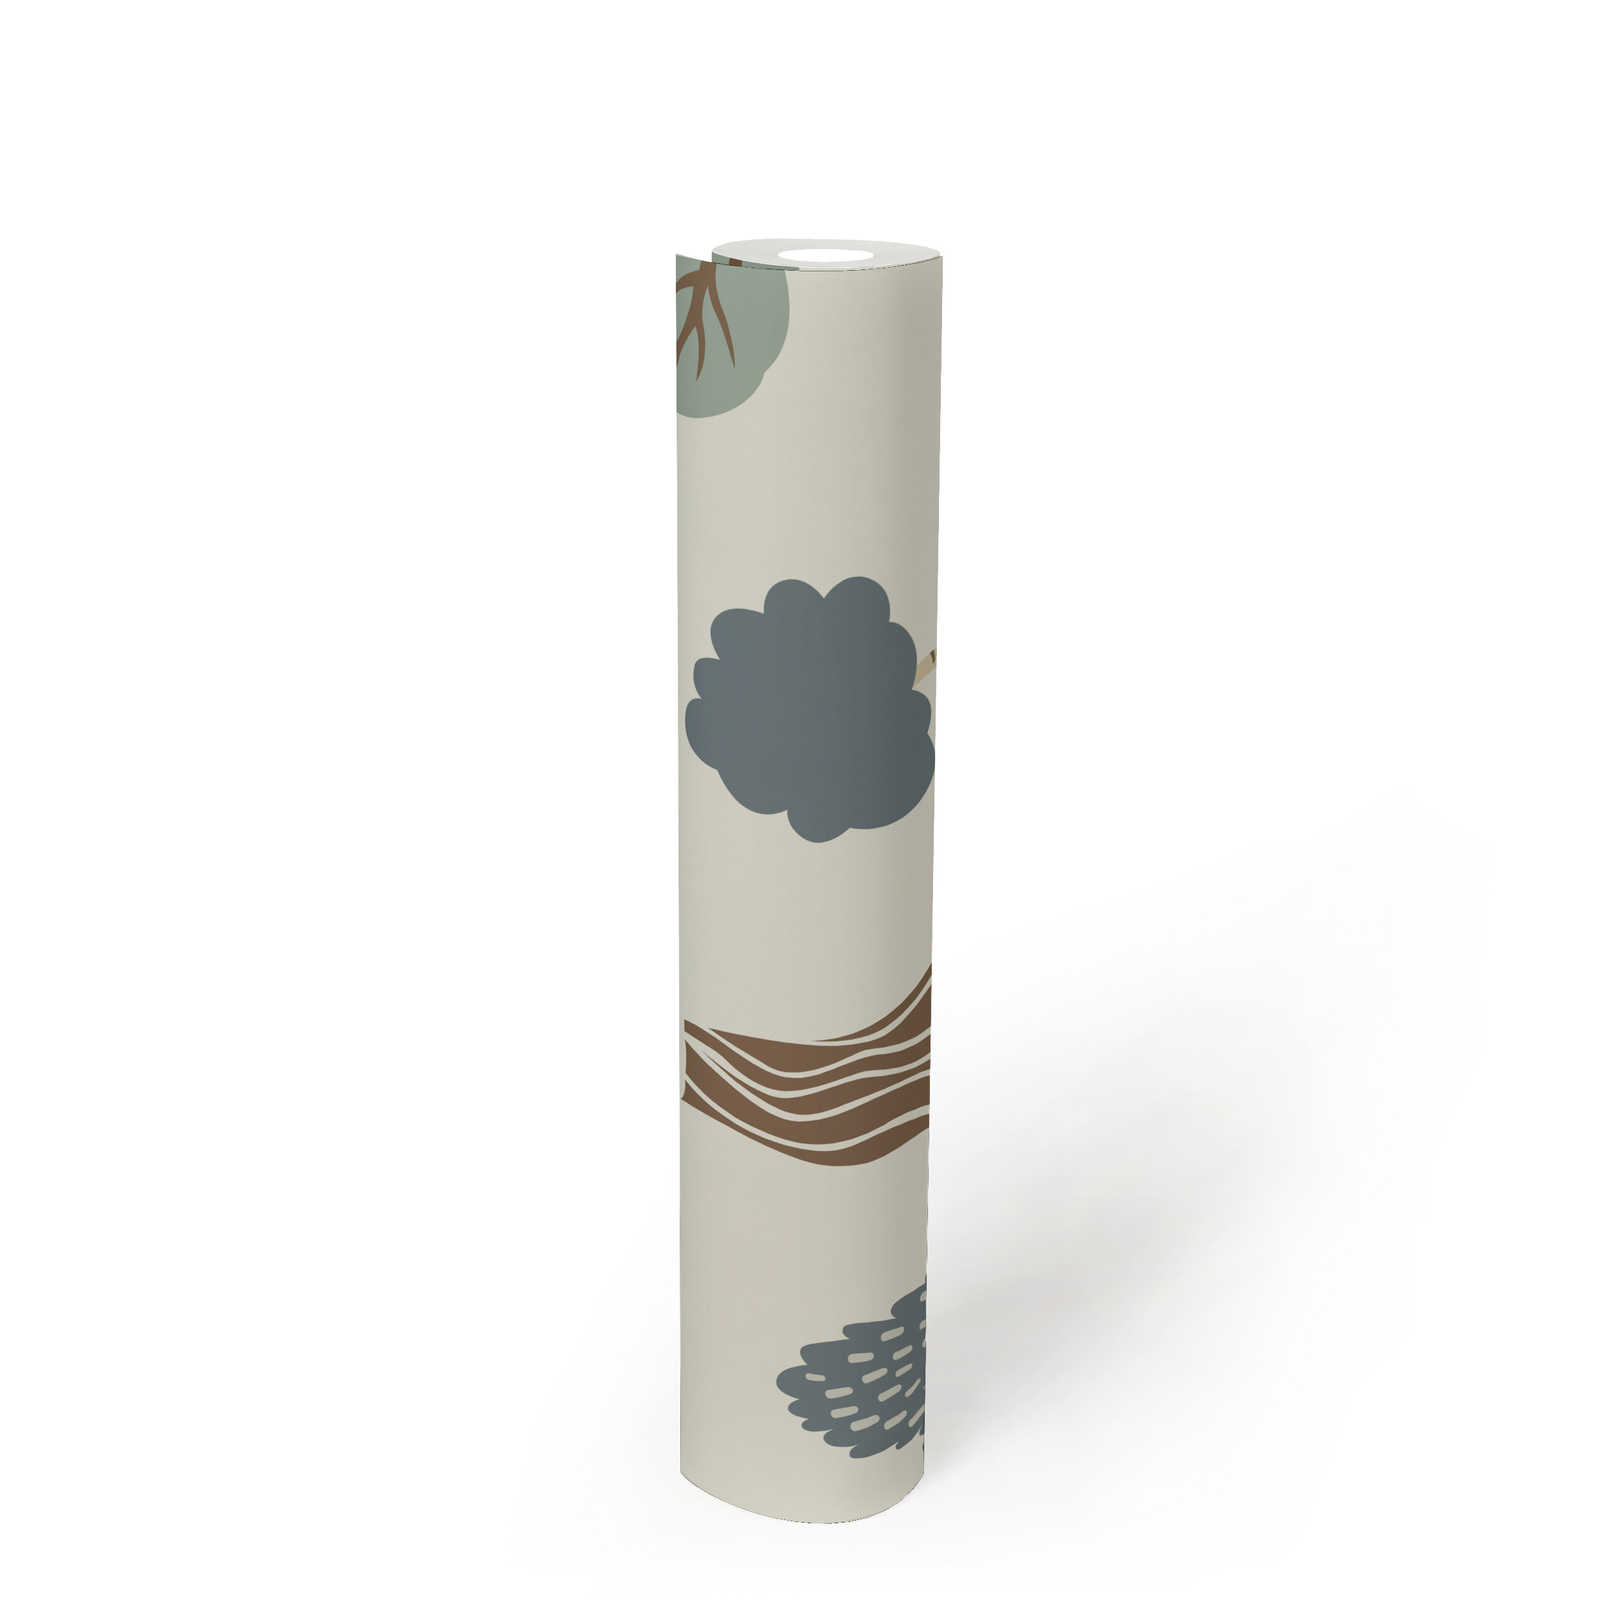             papier peint en papier intissé avec motif minimal de forêt avec des arbres - crème, vert, marron
        